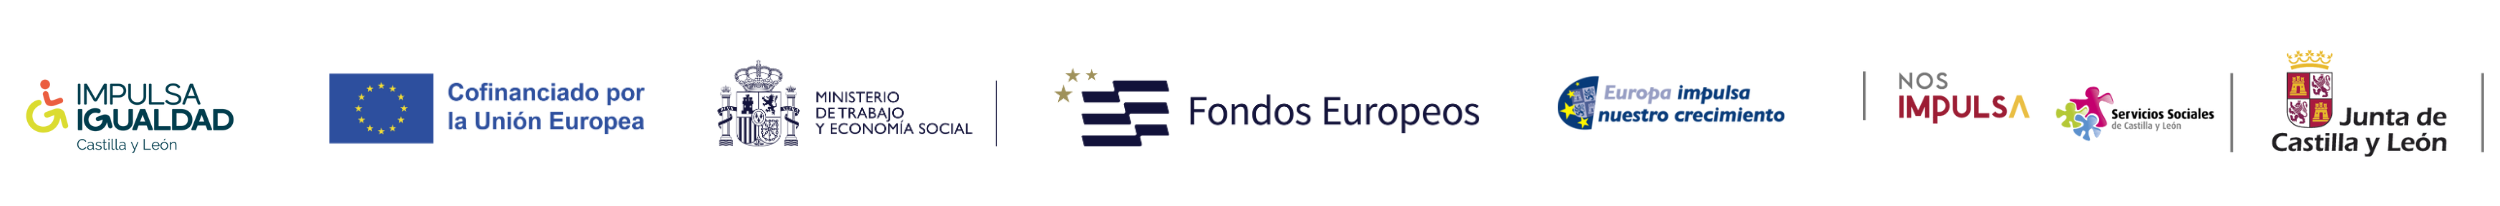 Logos del programa: IMPULSA IGUALDAD CyL, Fondos Europeos y Gerencia de Servicios Sociales JCyL